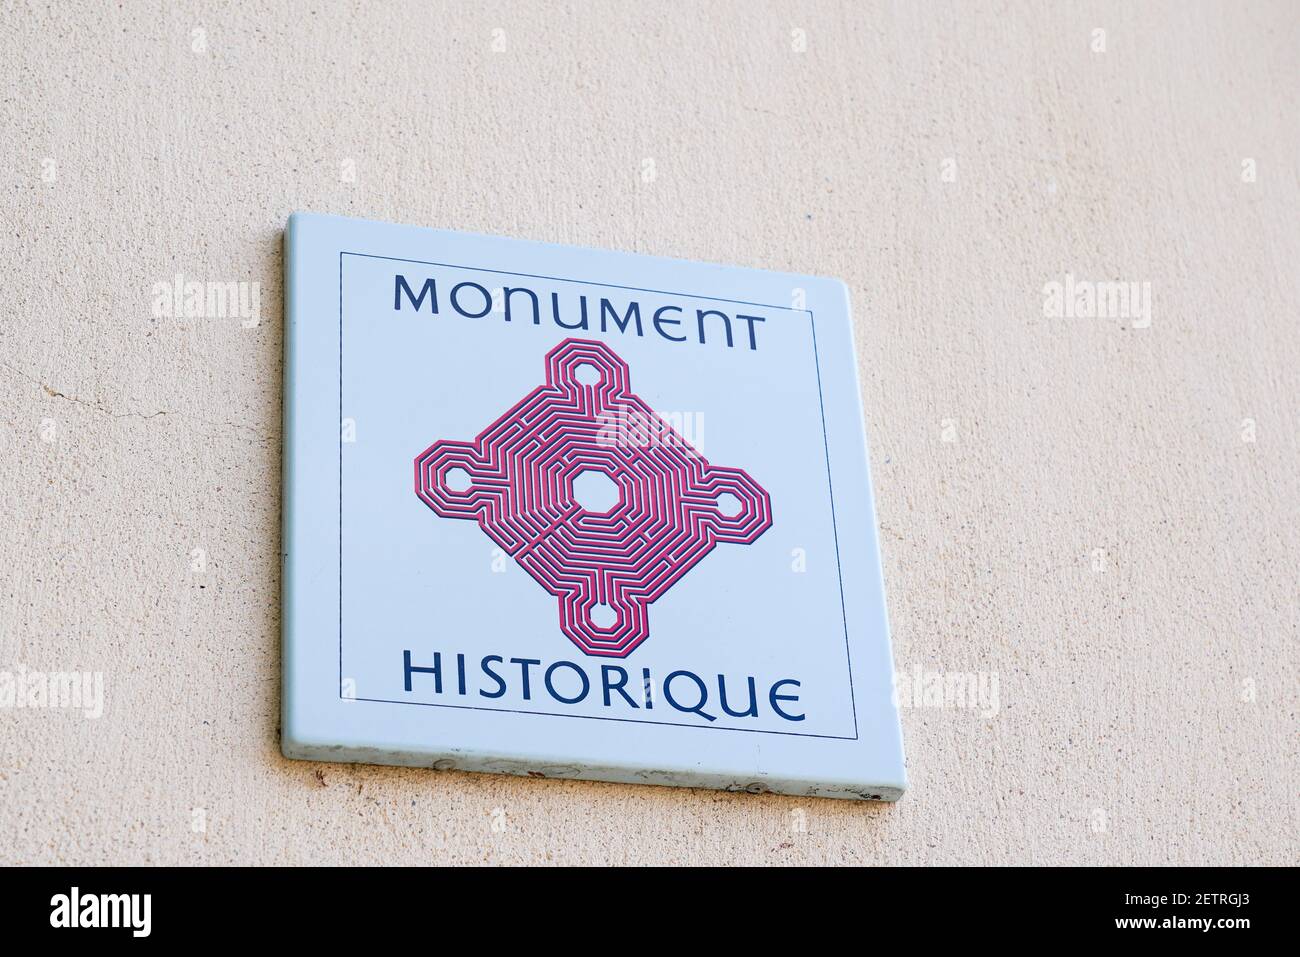 Bordeaux , Aquitaine France - 12 28 2020 : logo et signe du Monument  historique en français pour l'ancien Monument historique Photo Stock - Alamy